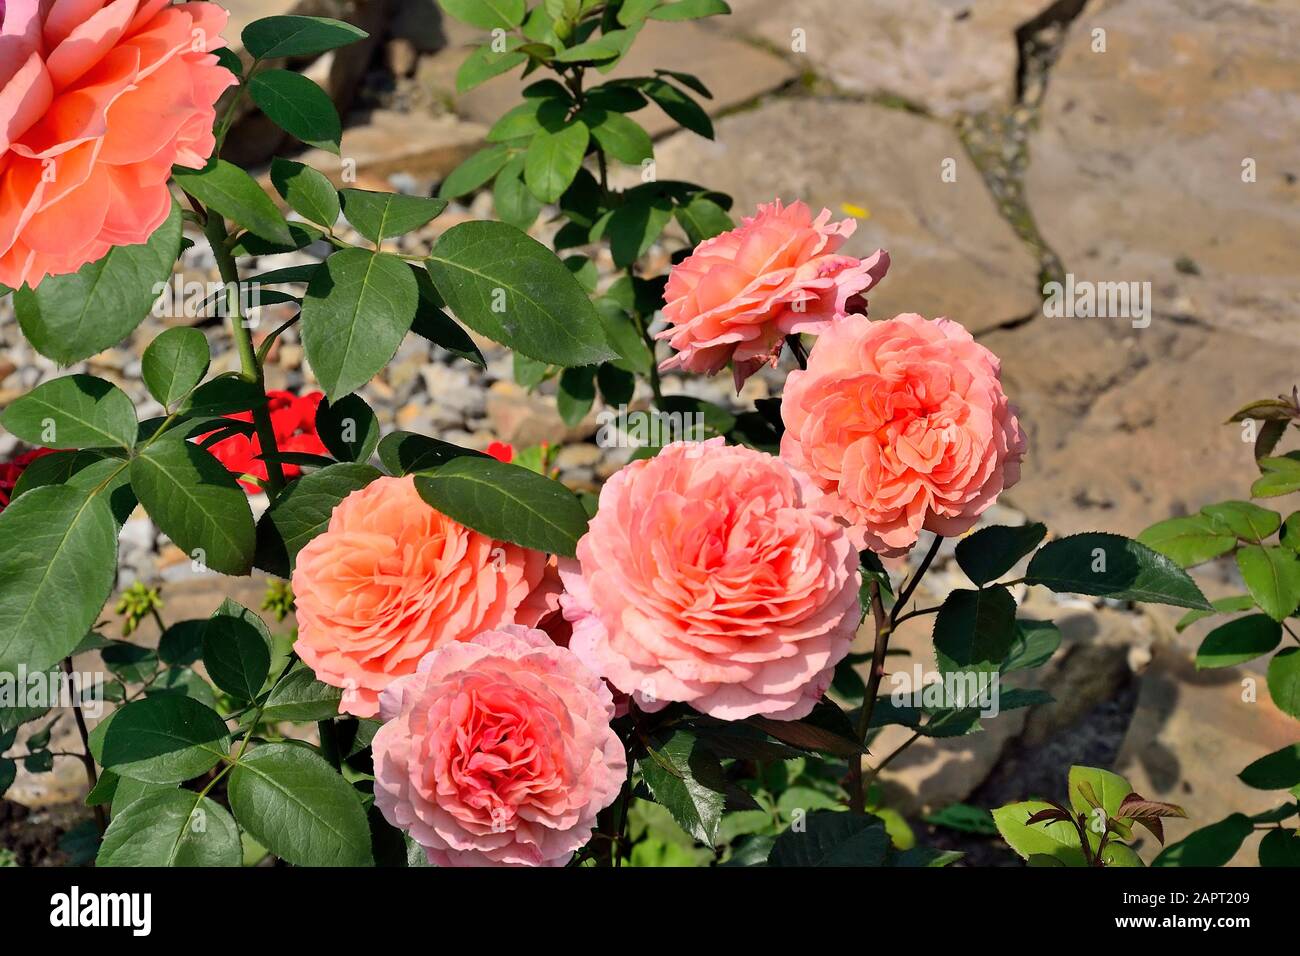 Vườn hoa hồng là nơi cất giữ những loài hoa quý giá và đẹp nhất. Xem các hình ảnh đầy màu sắc của vườn hoa hồng sẽ giúp bạn thư giãn và cảm thấy bình yên trong tâm hồn. Hãy thưởng thức những bức ảnh đẹp này và tìm hiểu thêm về loài hoa quý giá này.